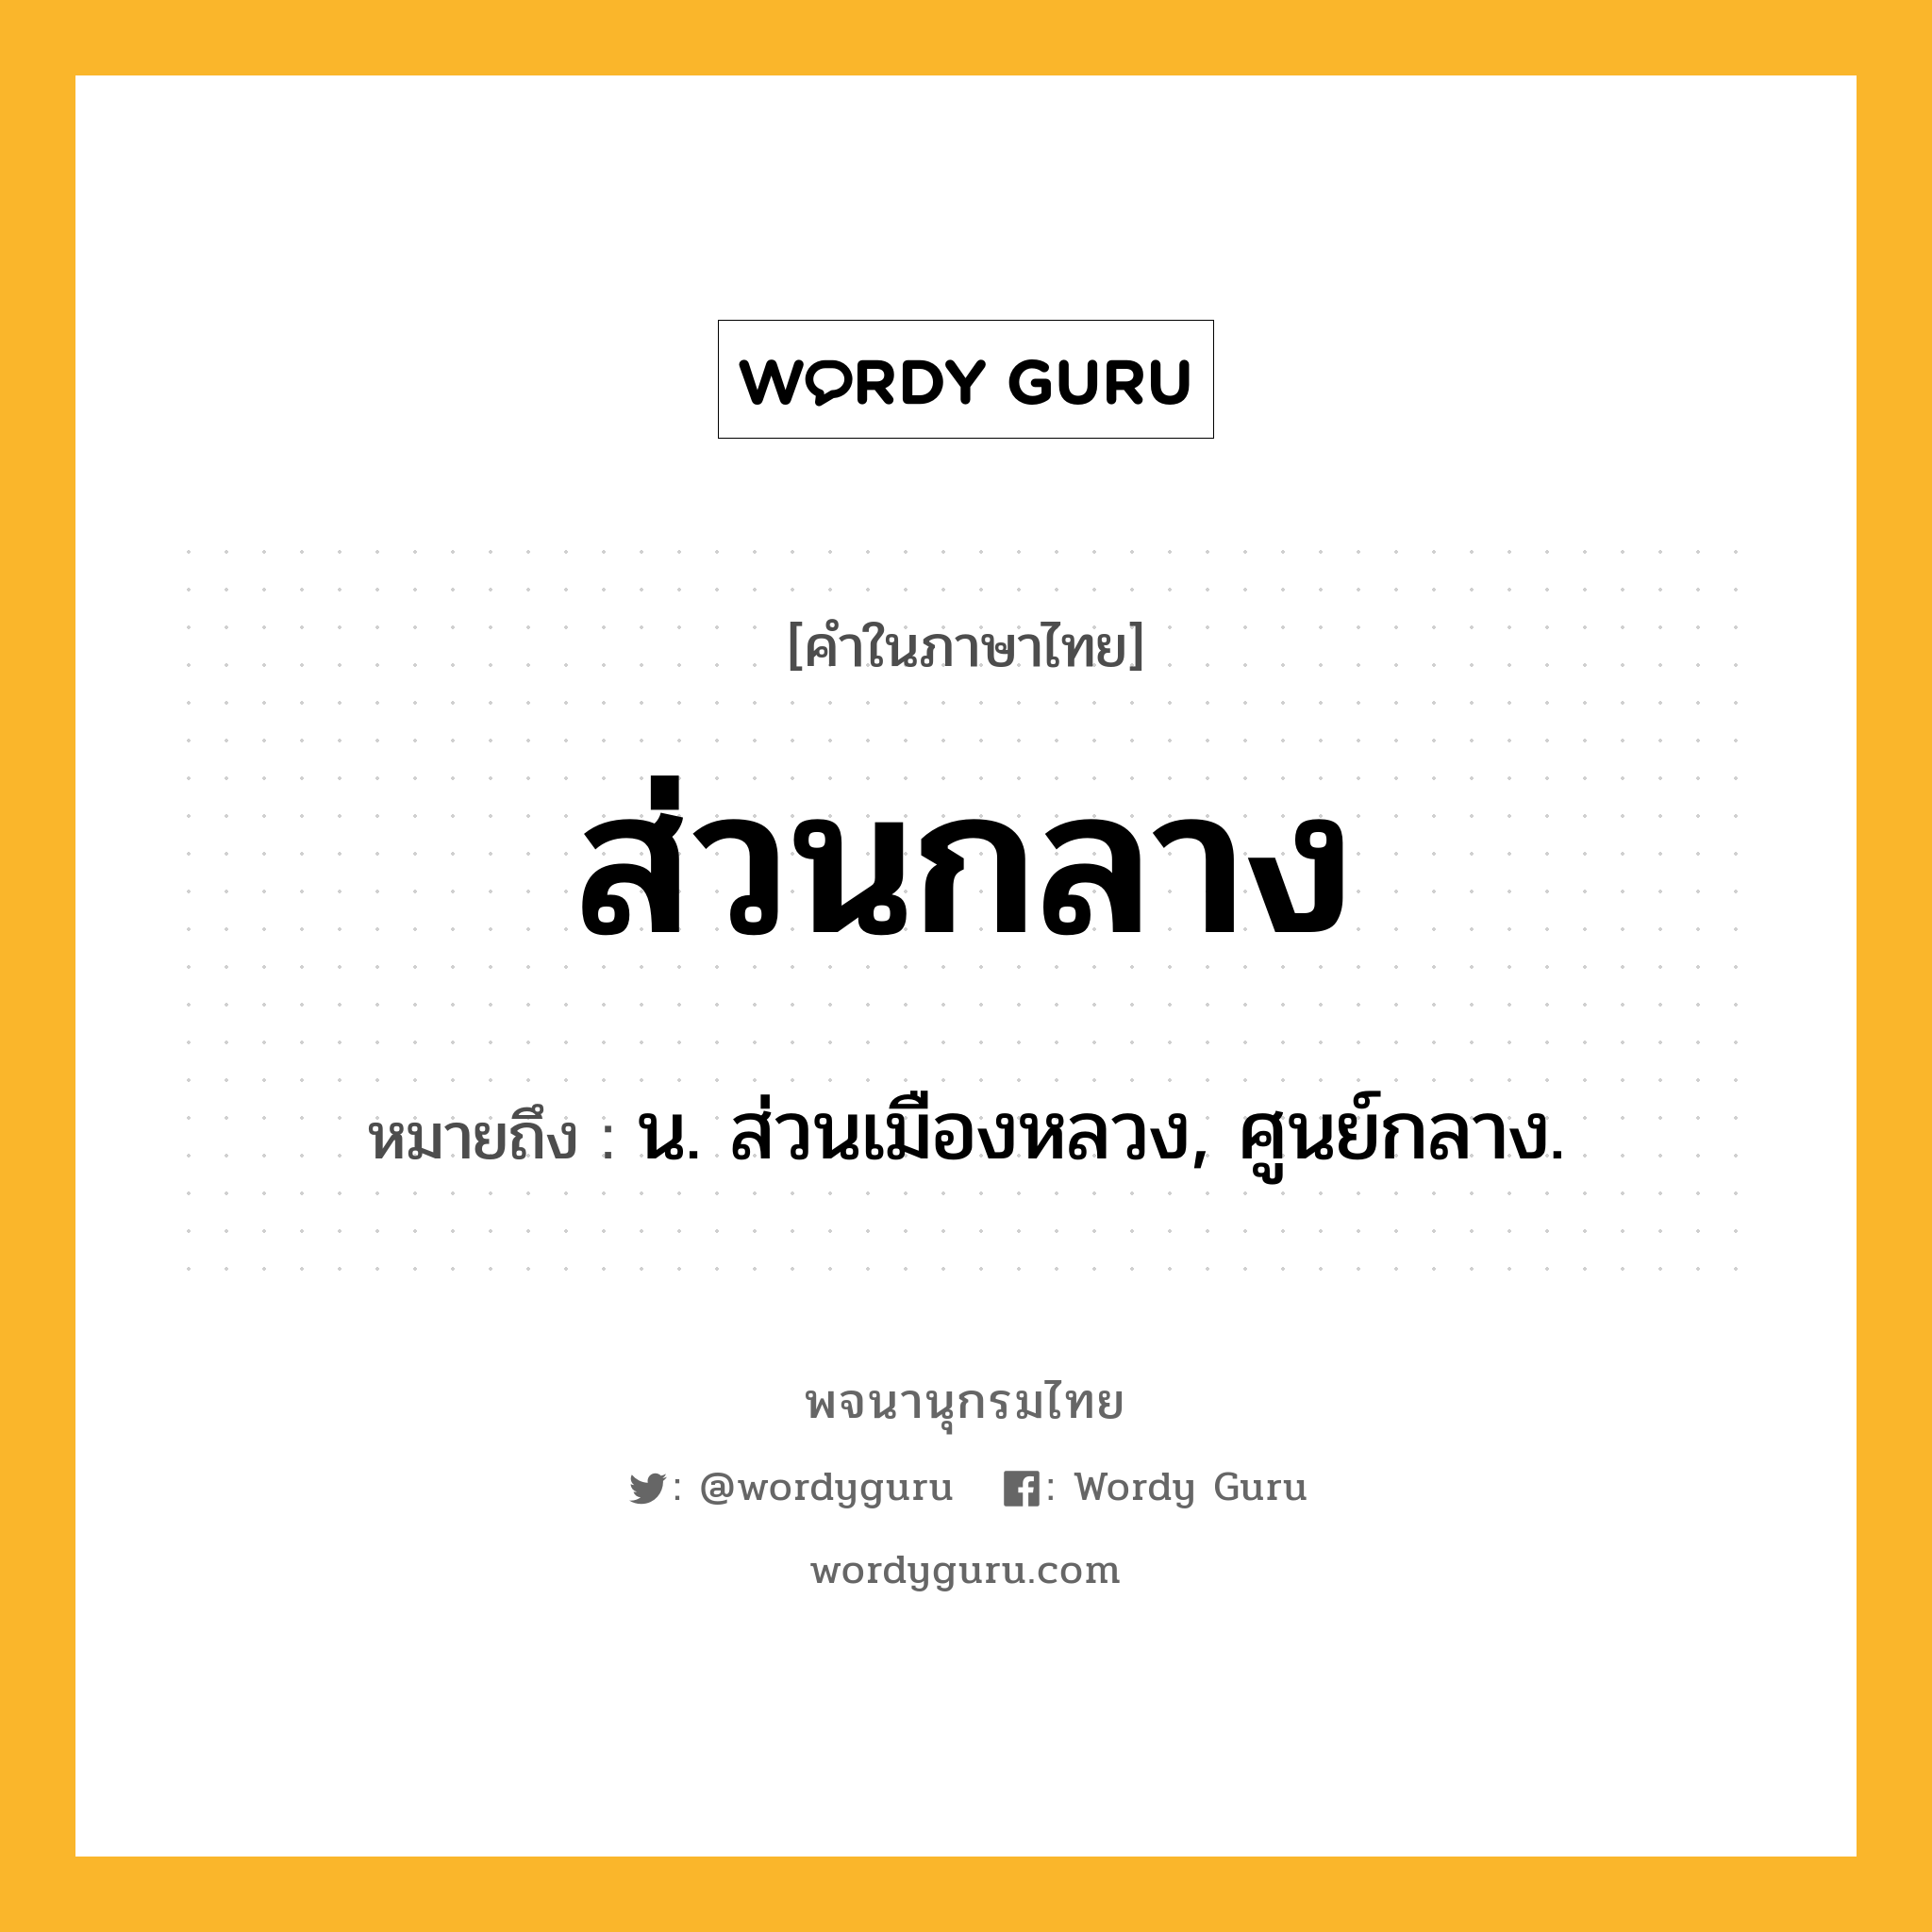 ส่วนกลาง ความหมาย หมายถึงอะไร?, คำในภาษาไทย ส่วนกลาง หมายถึง น. ส่วนเมืองหลวง, ศูนย์กลาง.